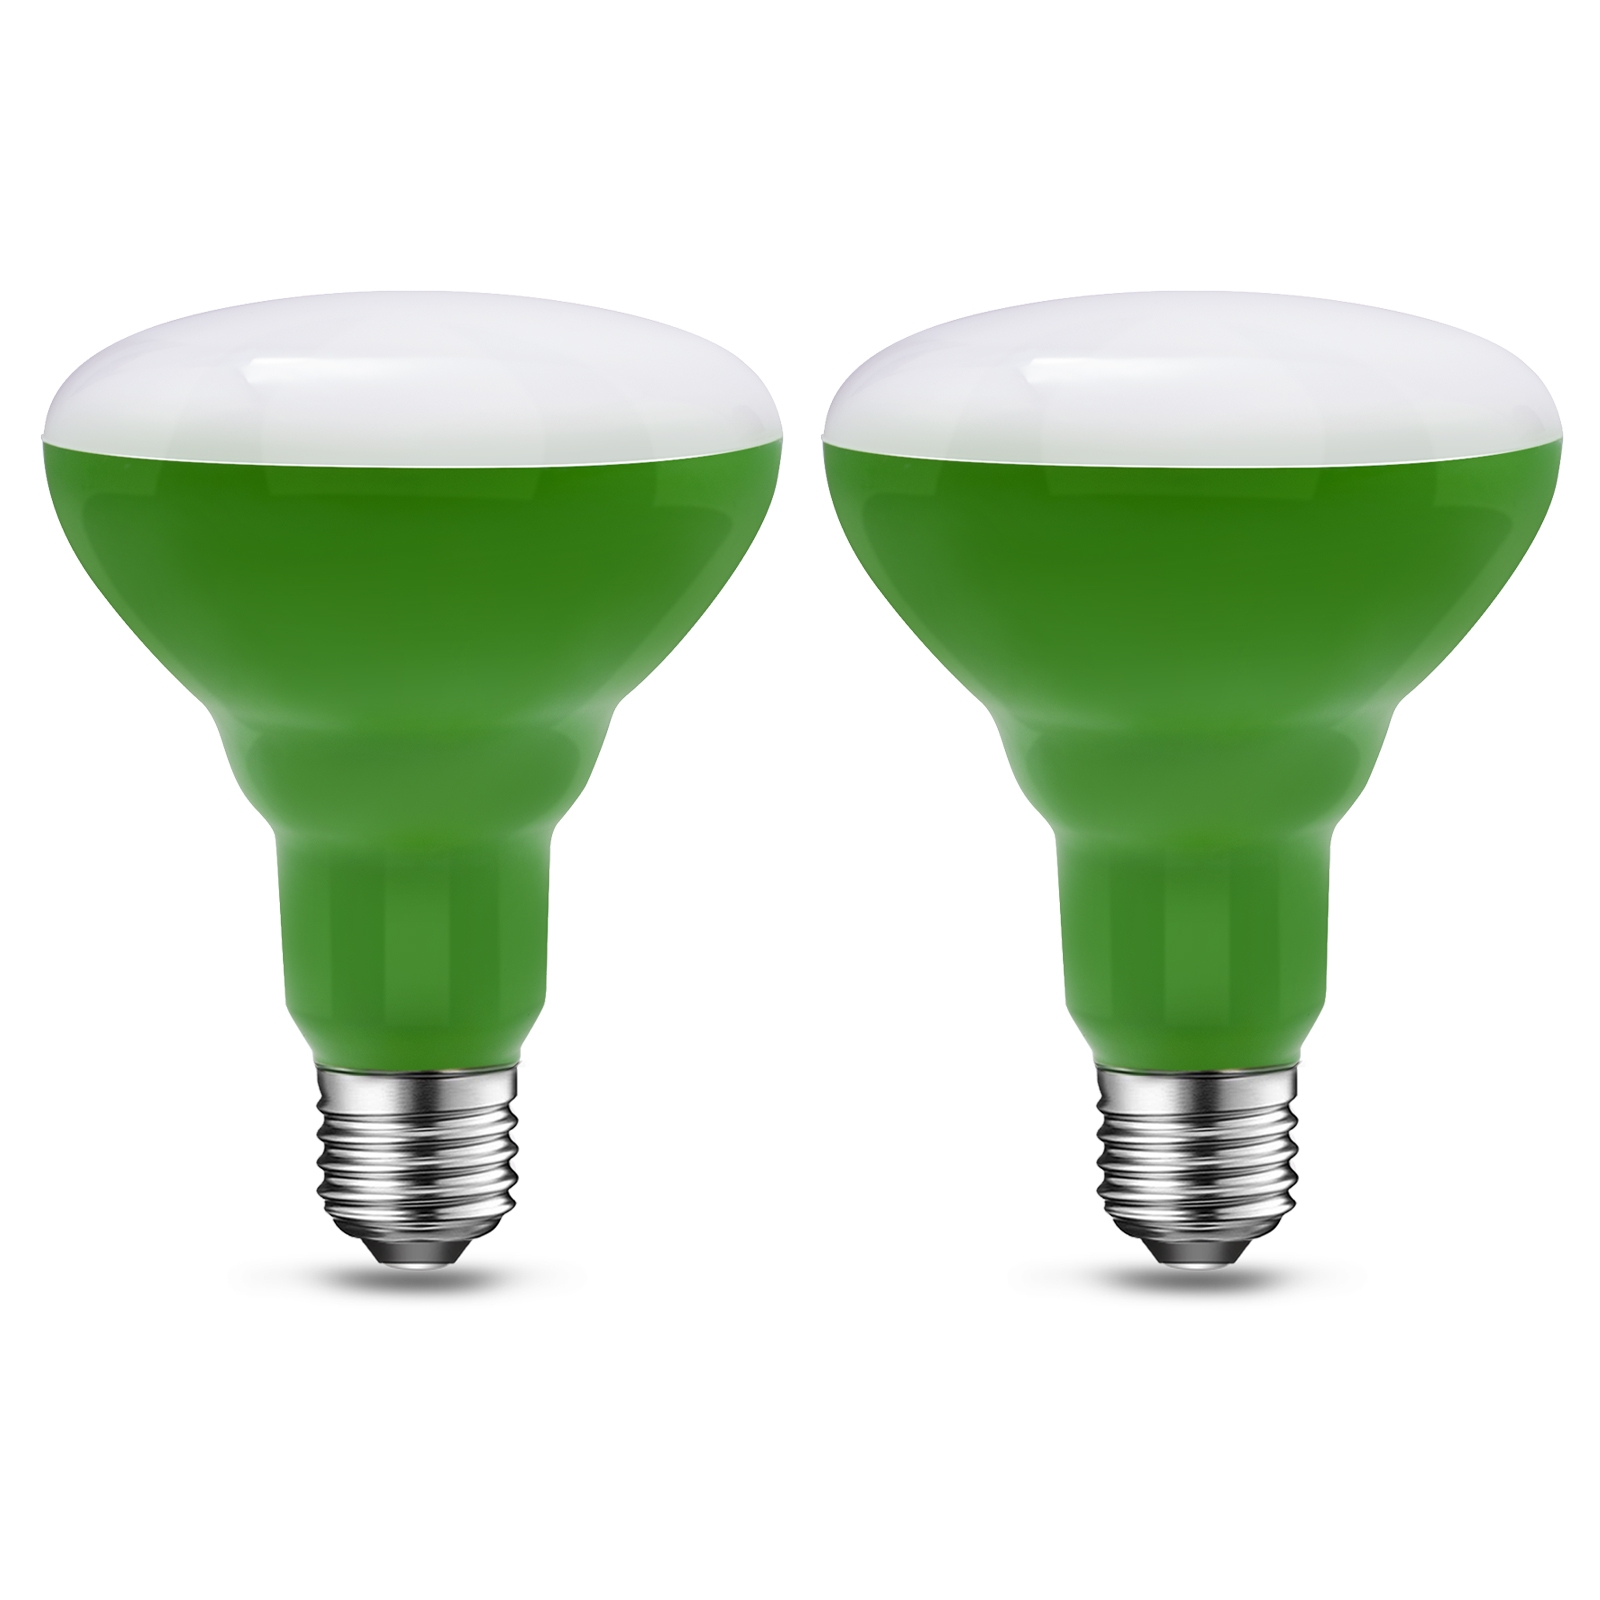 LED Grow Light Bulbs for Indoor Plants,Grow Bulb, 60 Watt Equivalent Full Spectrum Grow Light Bulb